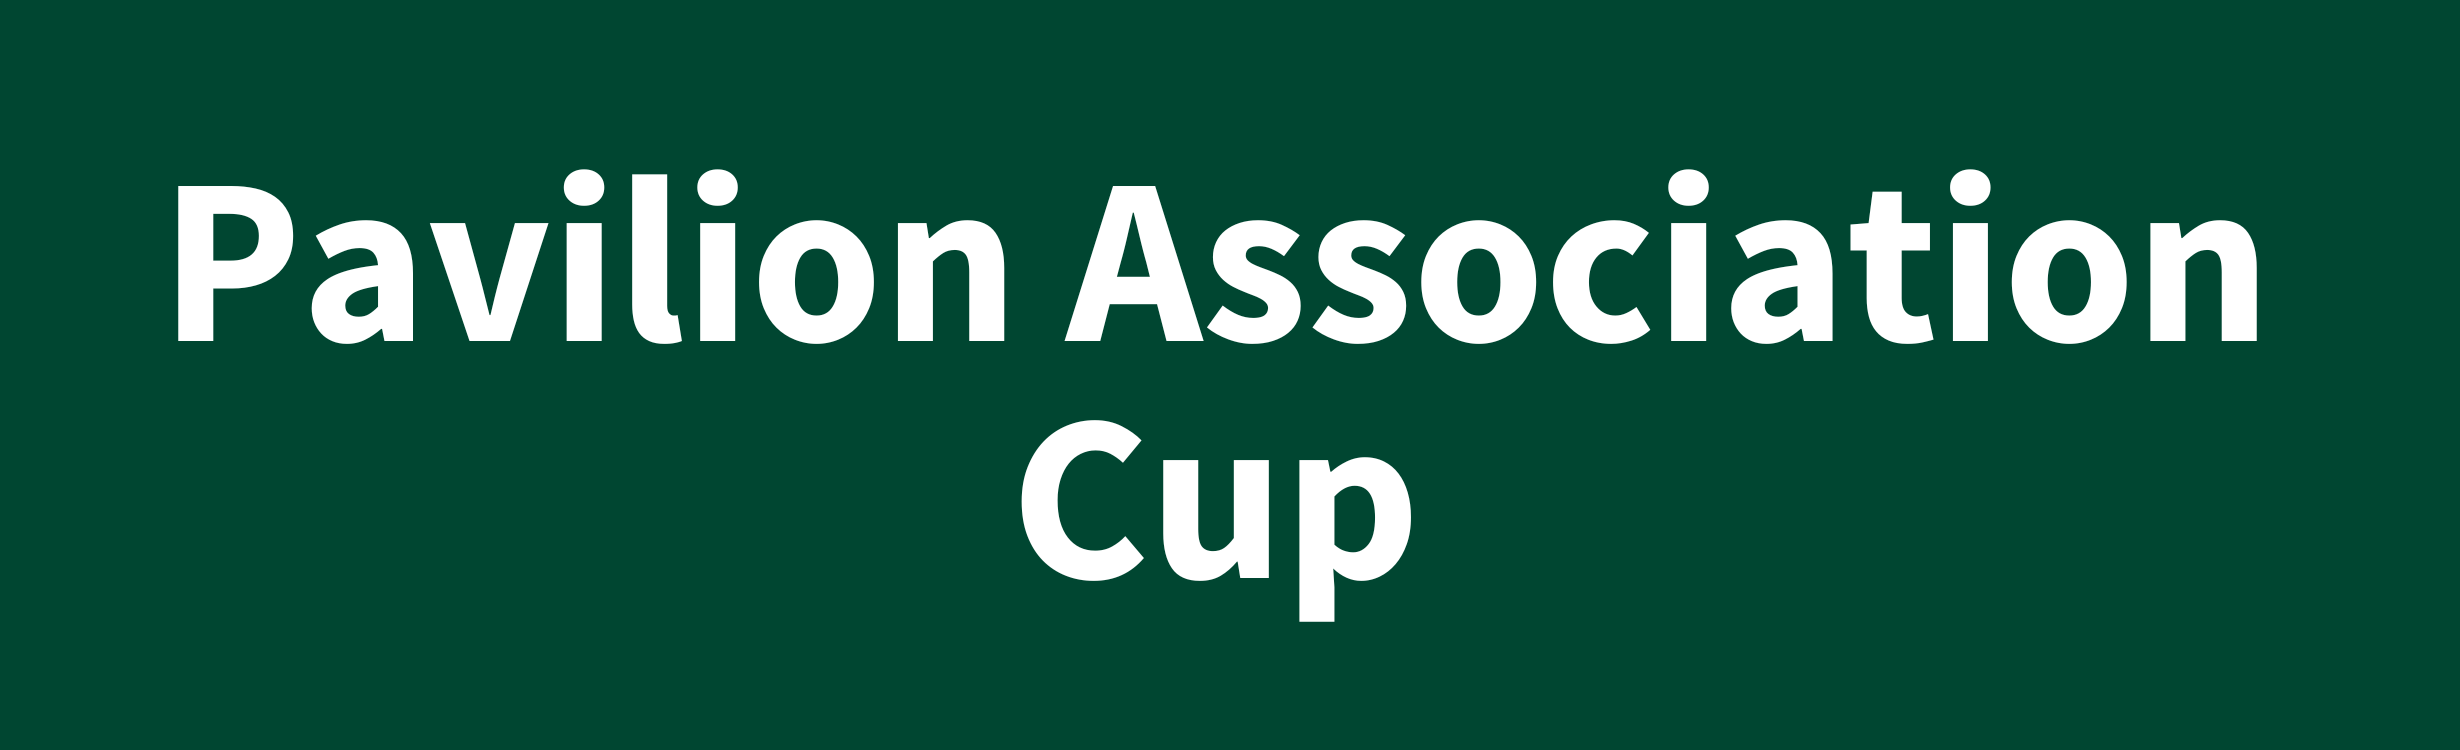 Pavilion Association Cup